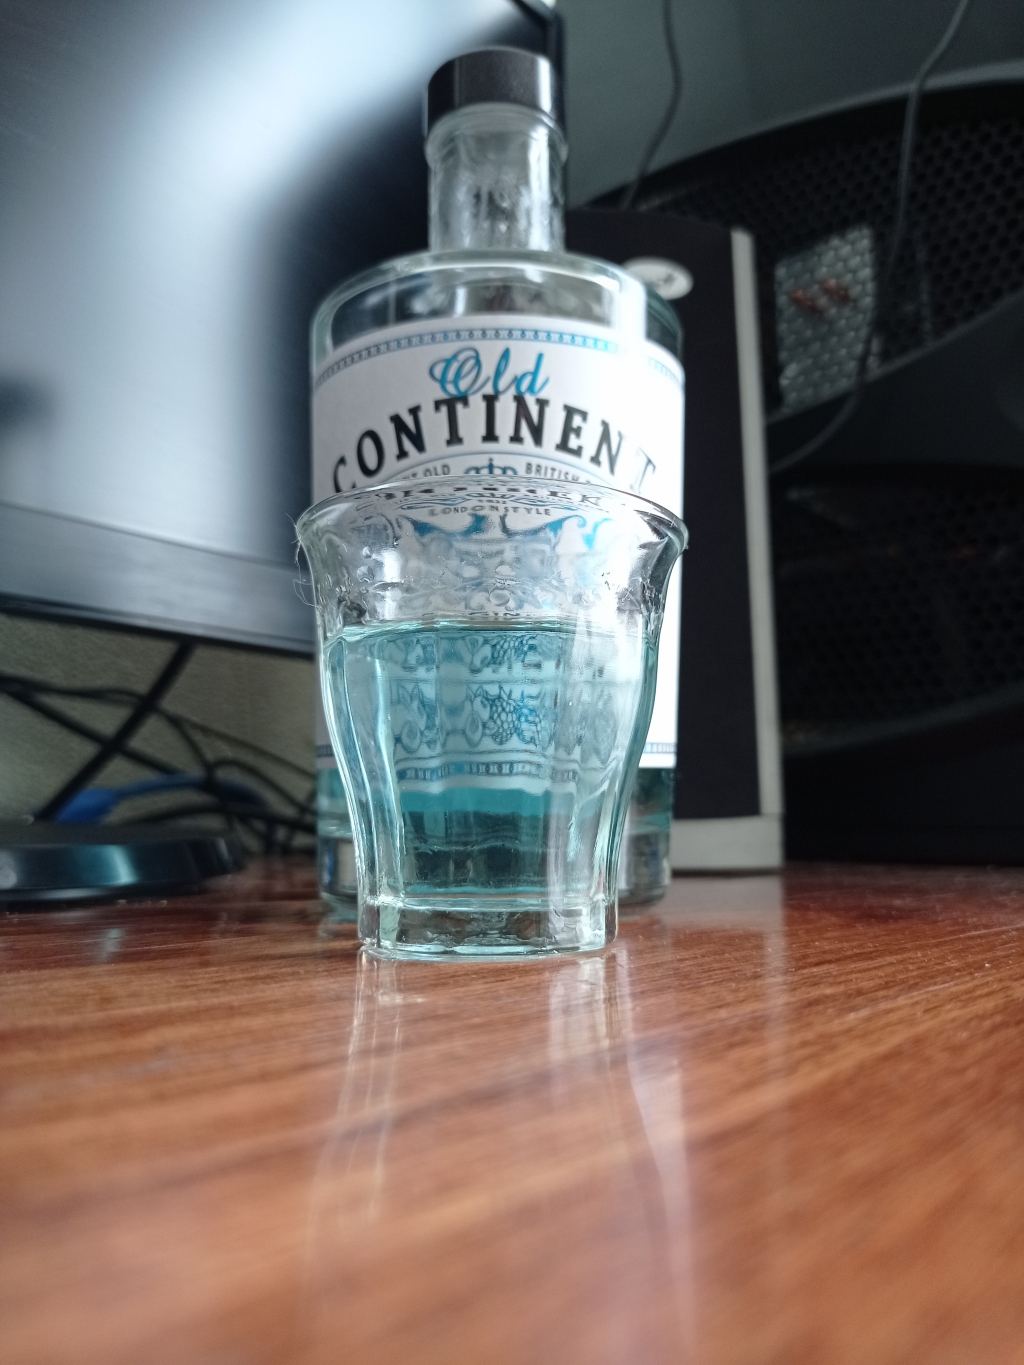 джин Old Continent - Приятный аромат и можжевеловый вкус